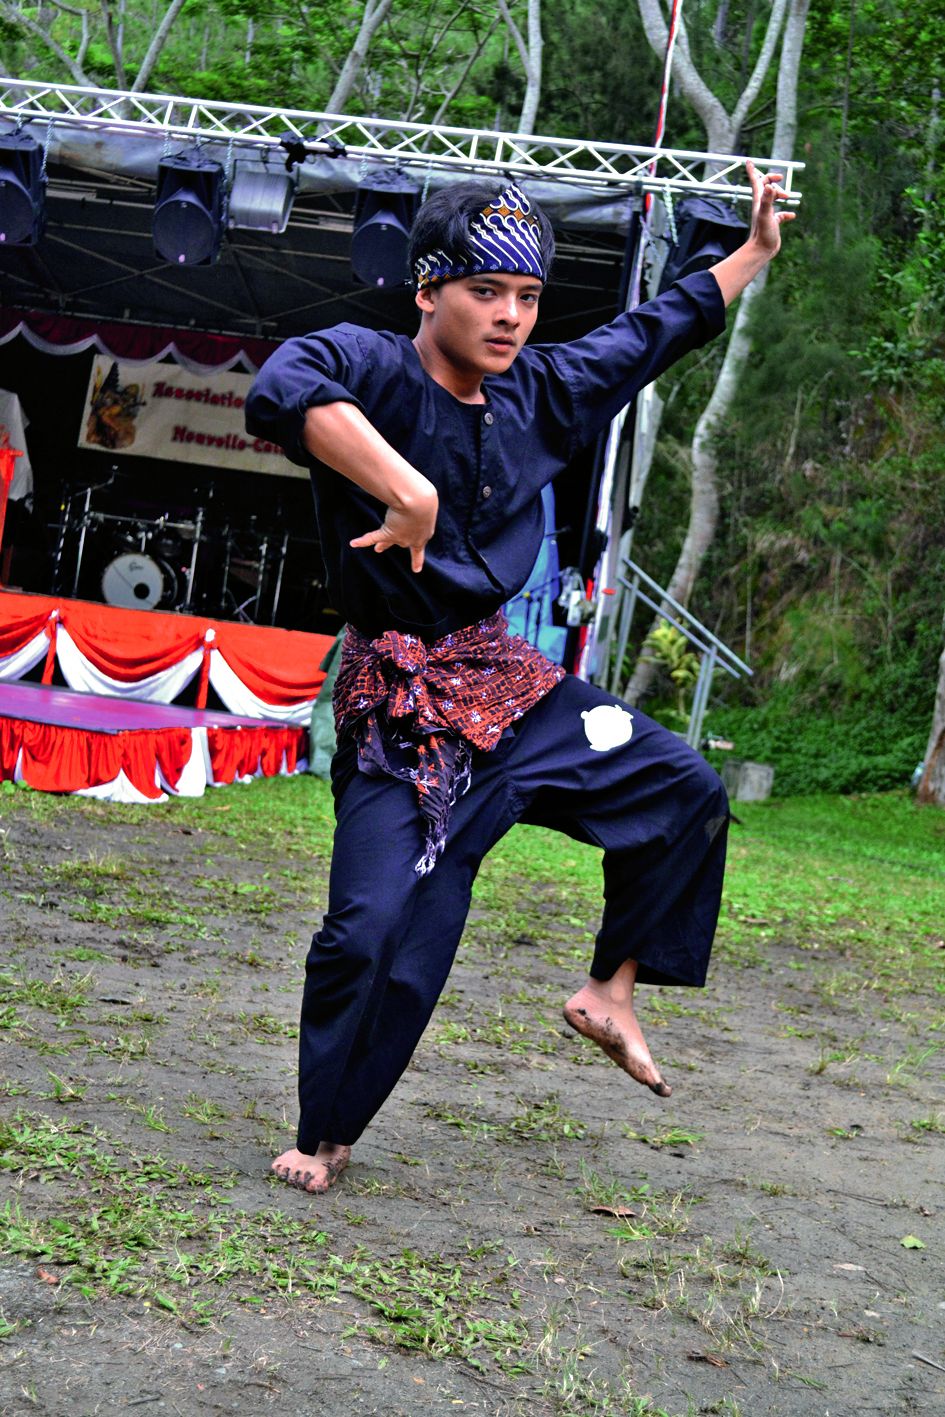 Parmi les démonstrations, les jeunes ont proposé une version dansée du pencak-silat. Les mouvements de cet art martial indonésien se rapprochent de ceux de la capoeira au Brésil.